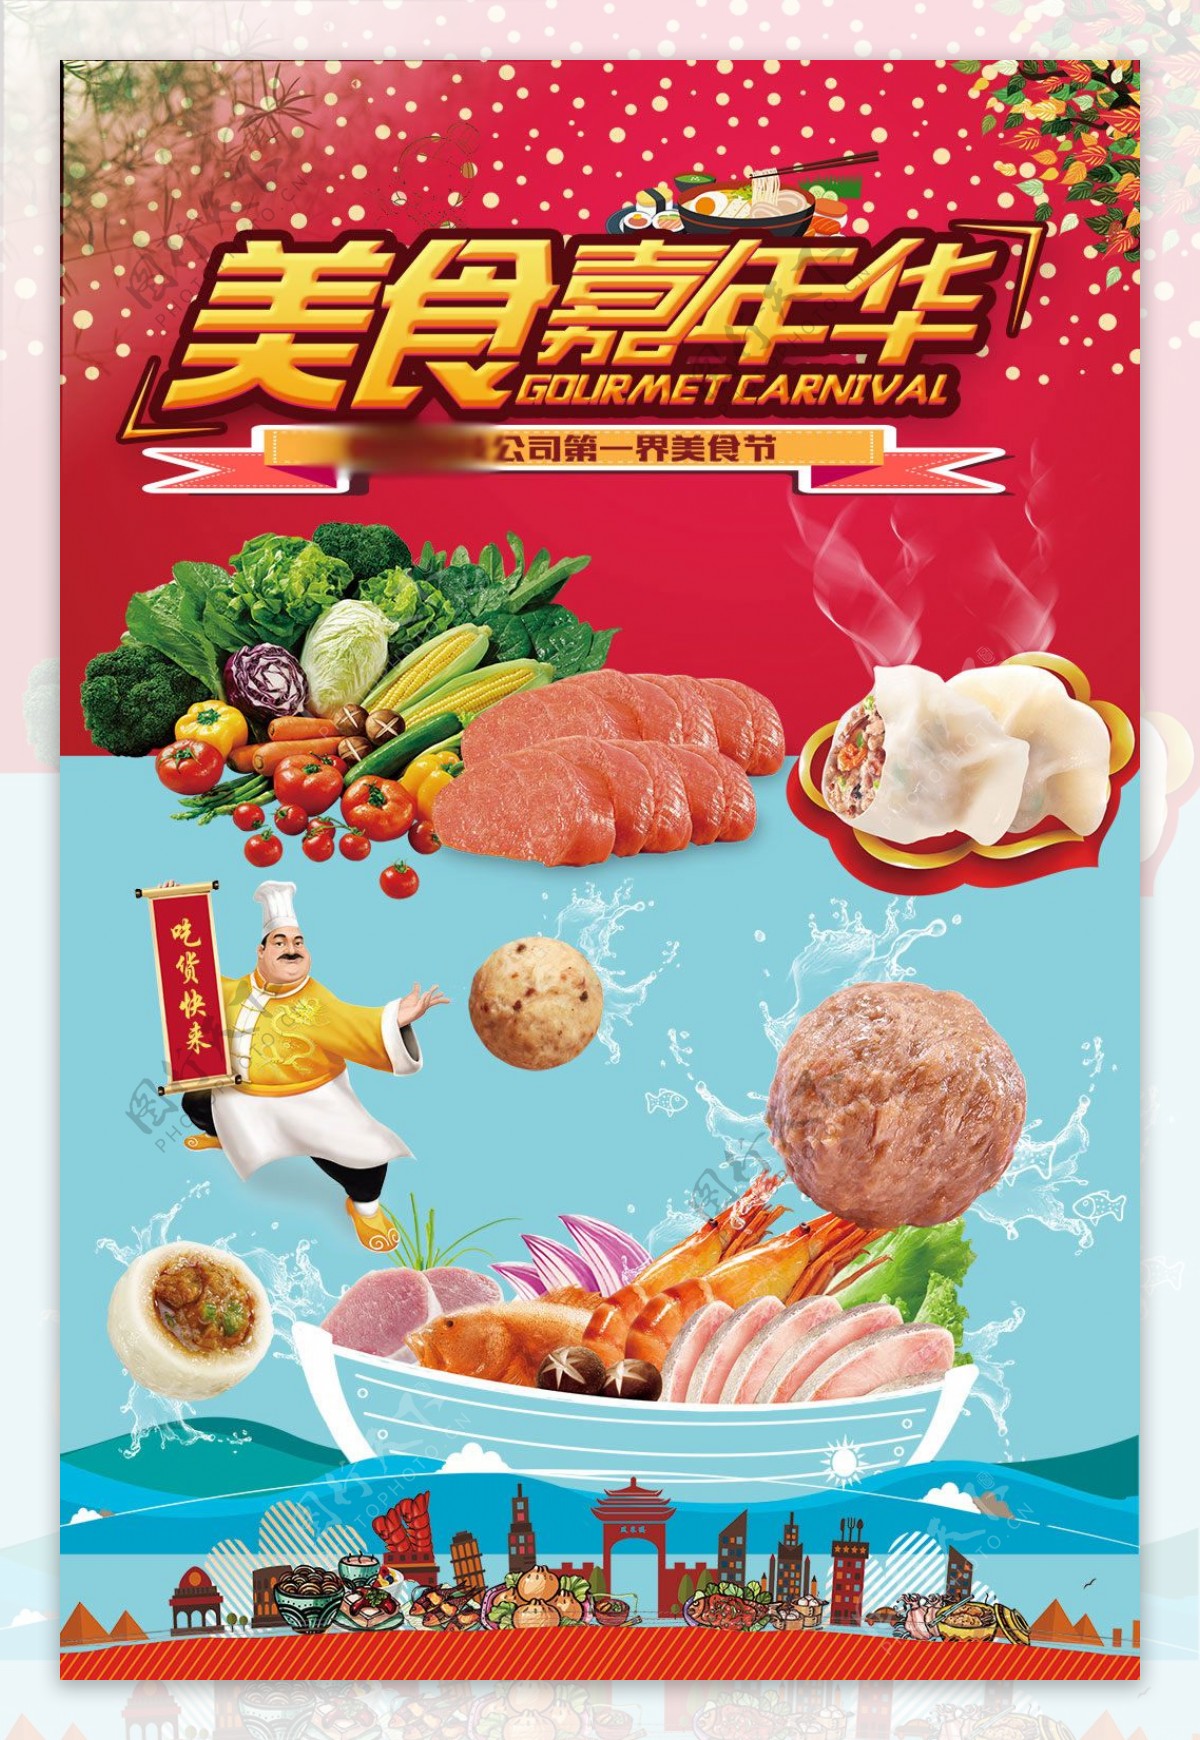 美食嘉年华活动宣传海报设计素材下载